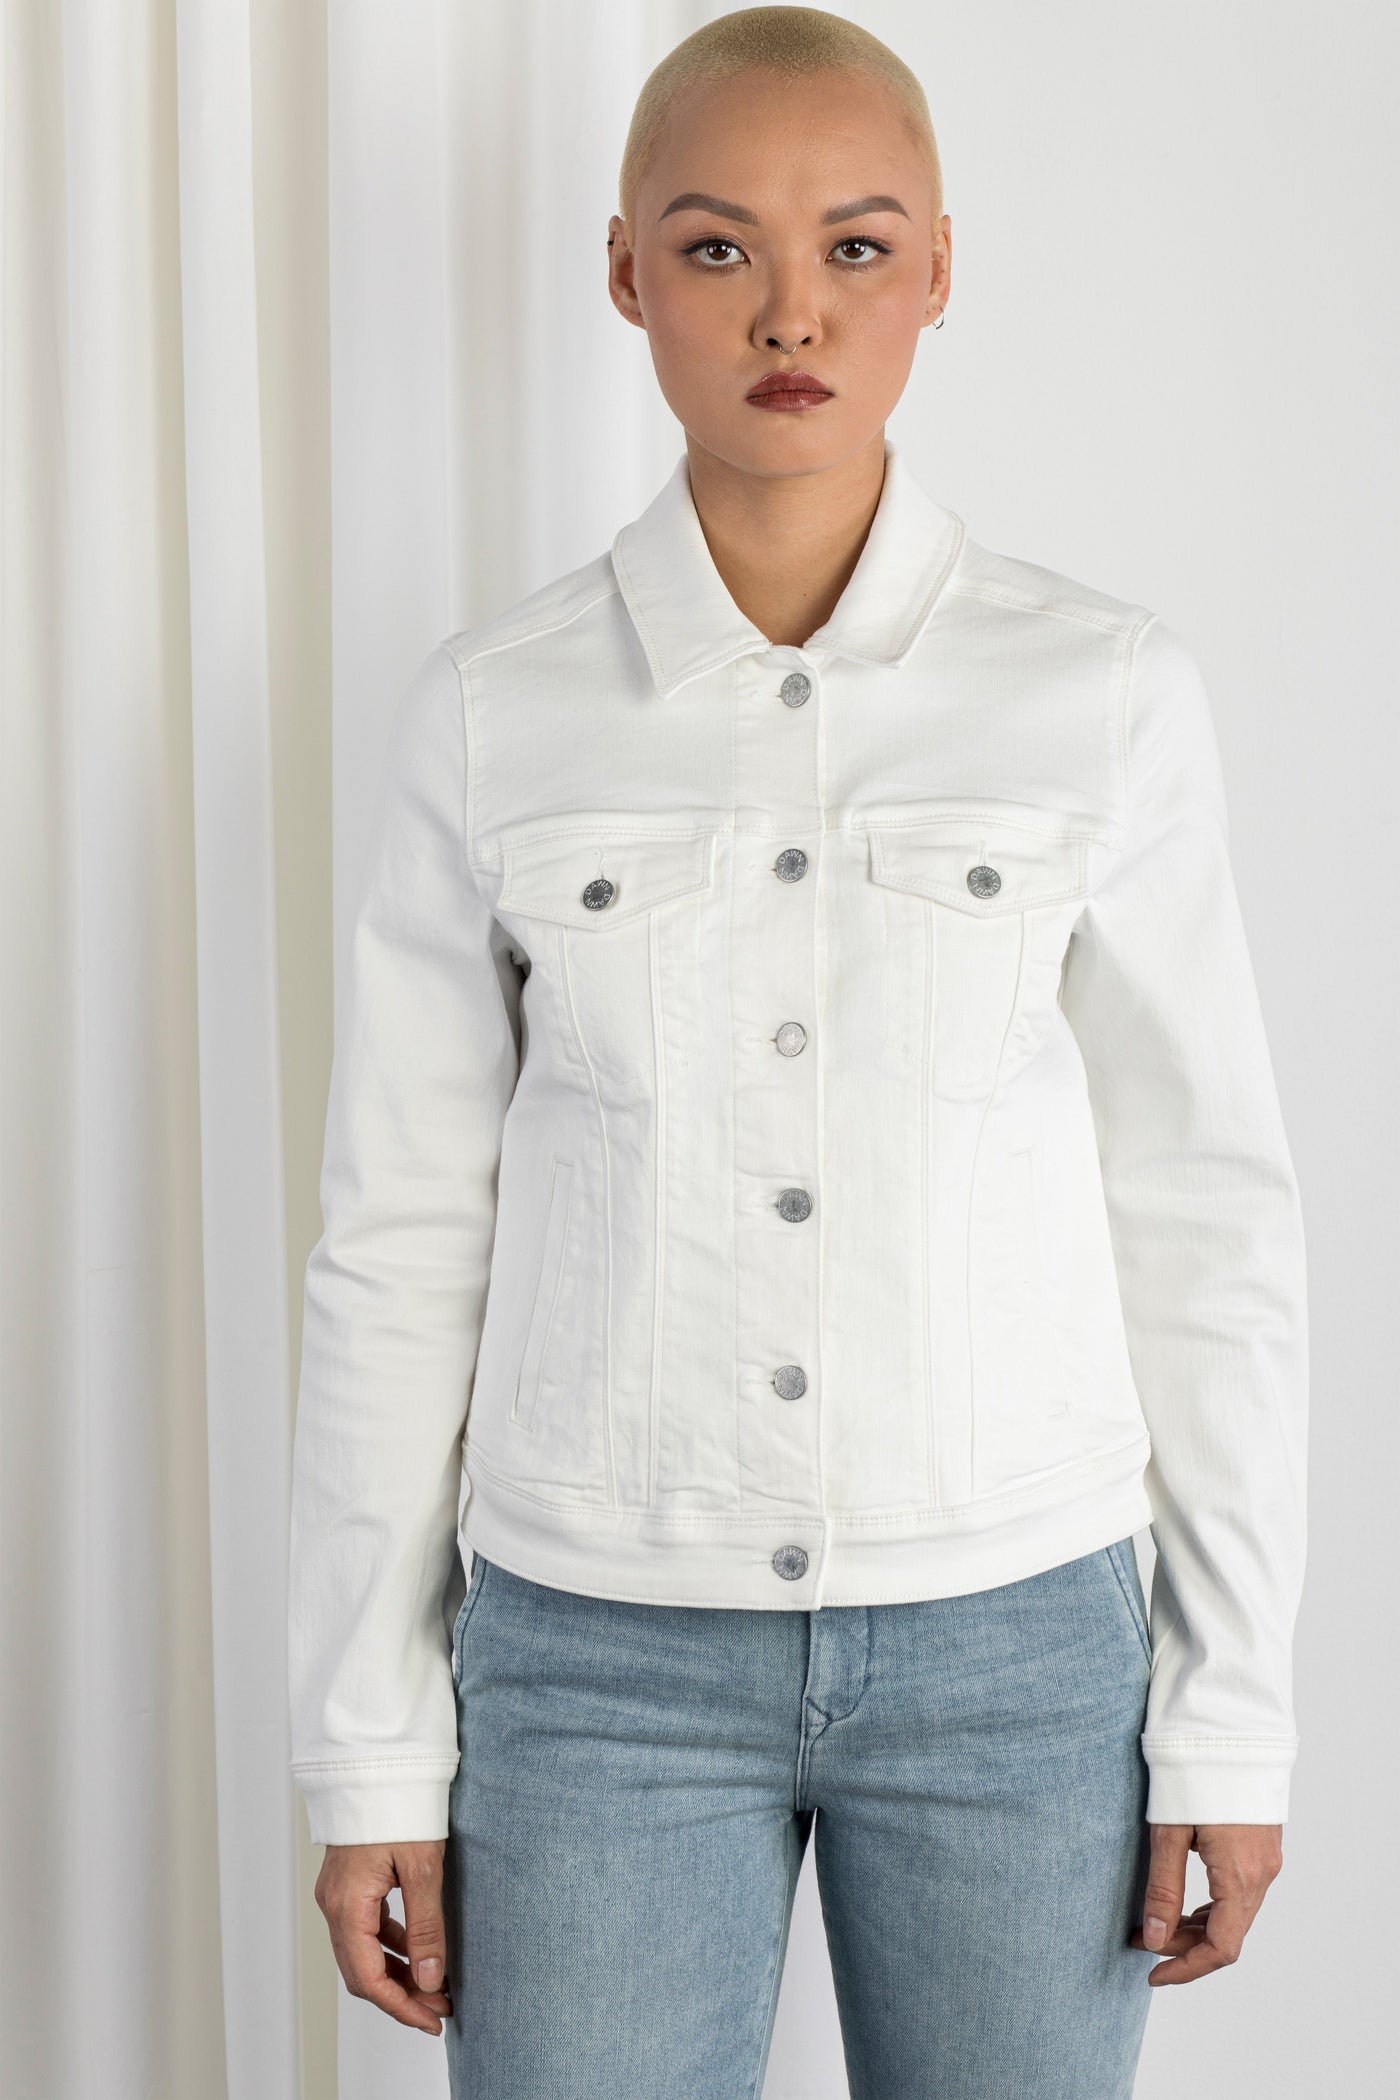 AURORA - Jacket, Organic Lightweight Denim, White Slub